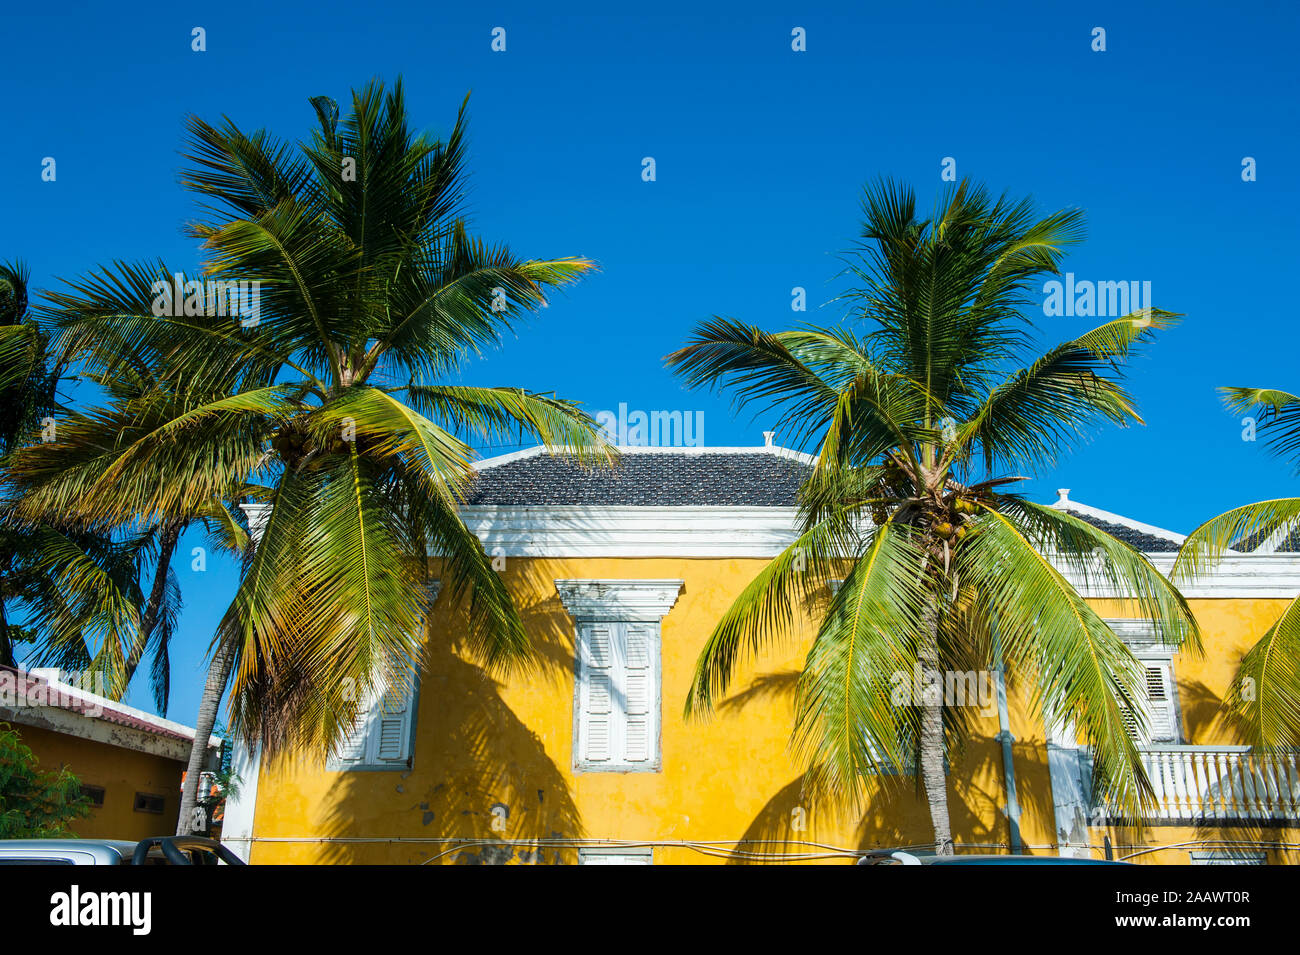 Basso angolo vista di palme cresce in casa contro il cielo blu e chiaro durante la giornata di sole, Bonaire, ABC, isole dei Caraibi Foto Stock